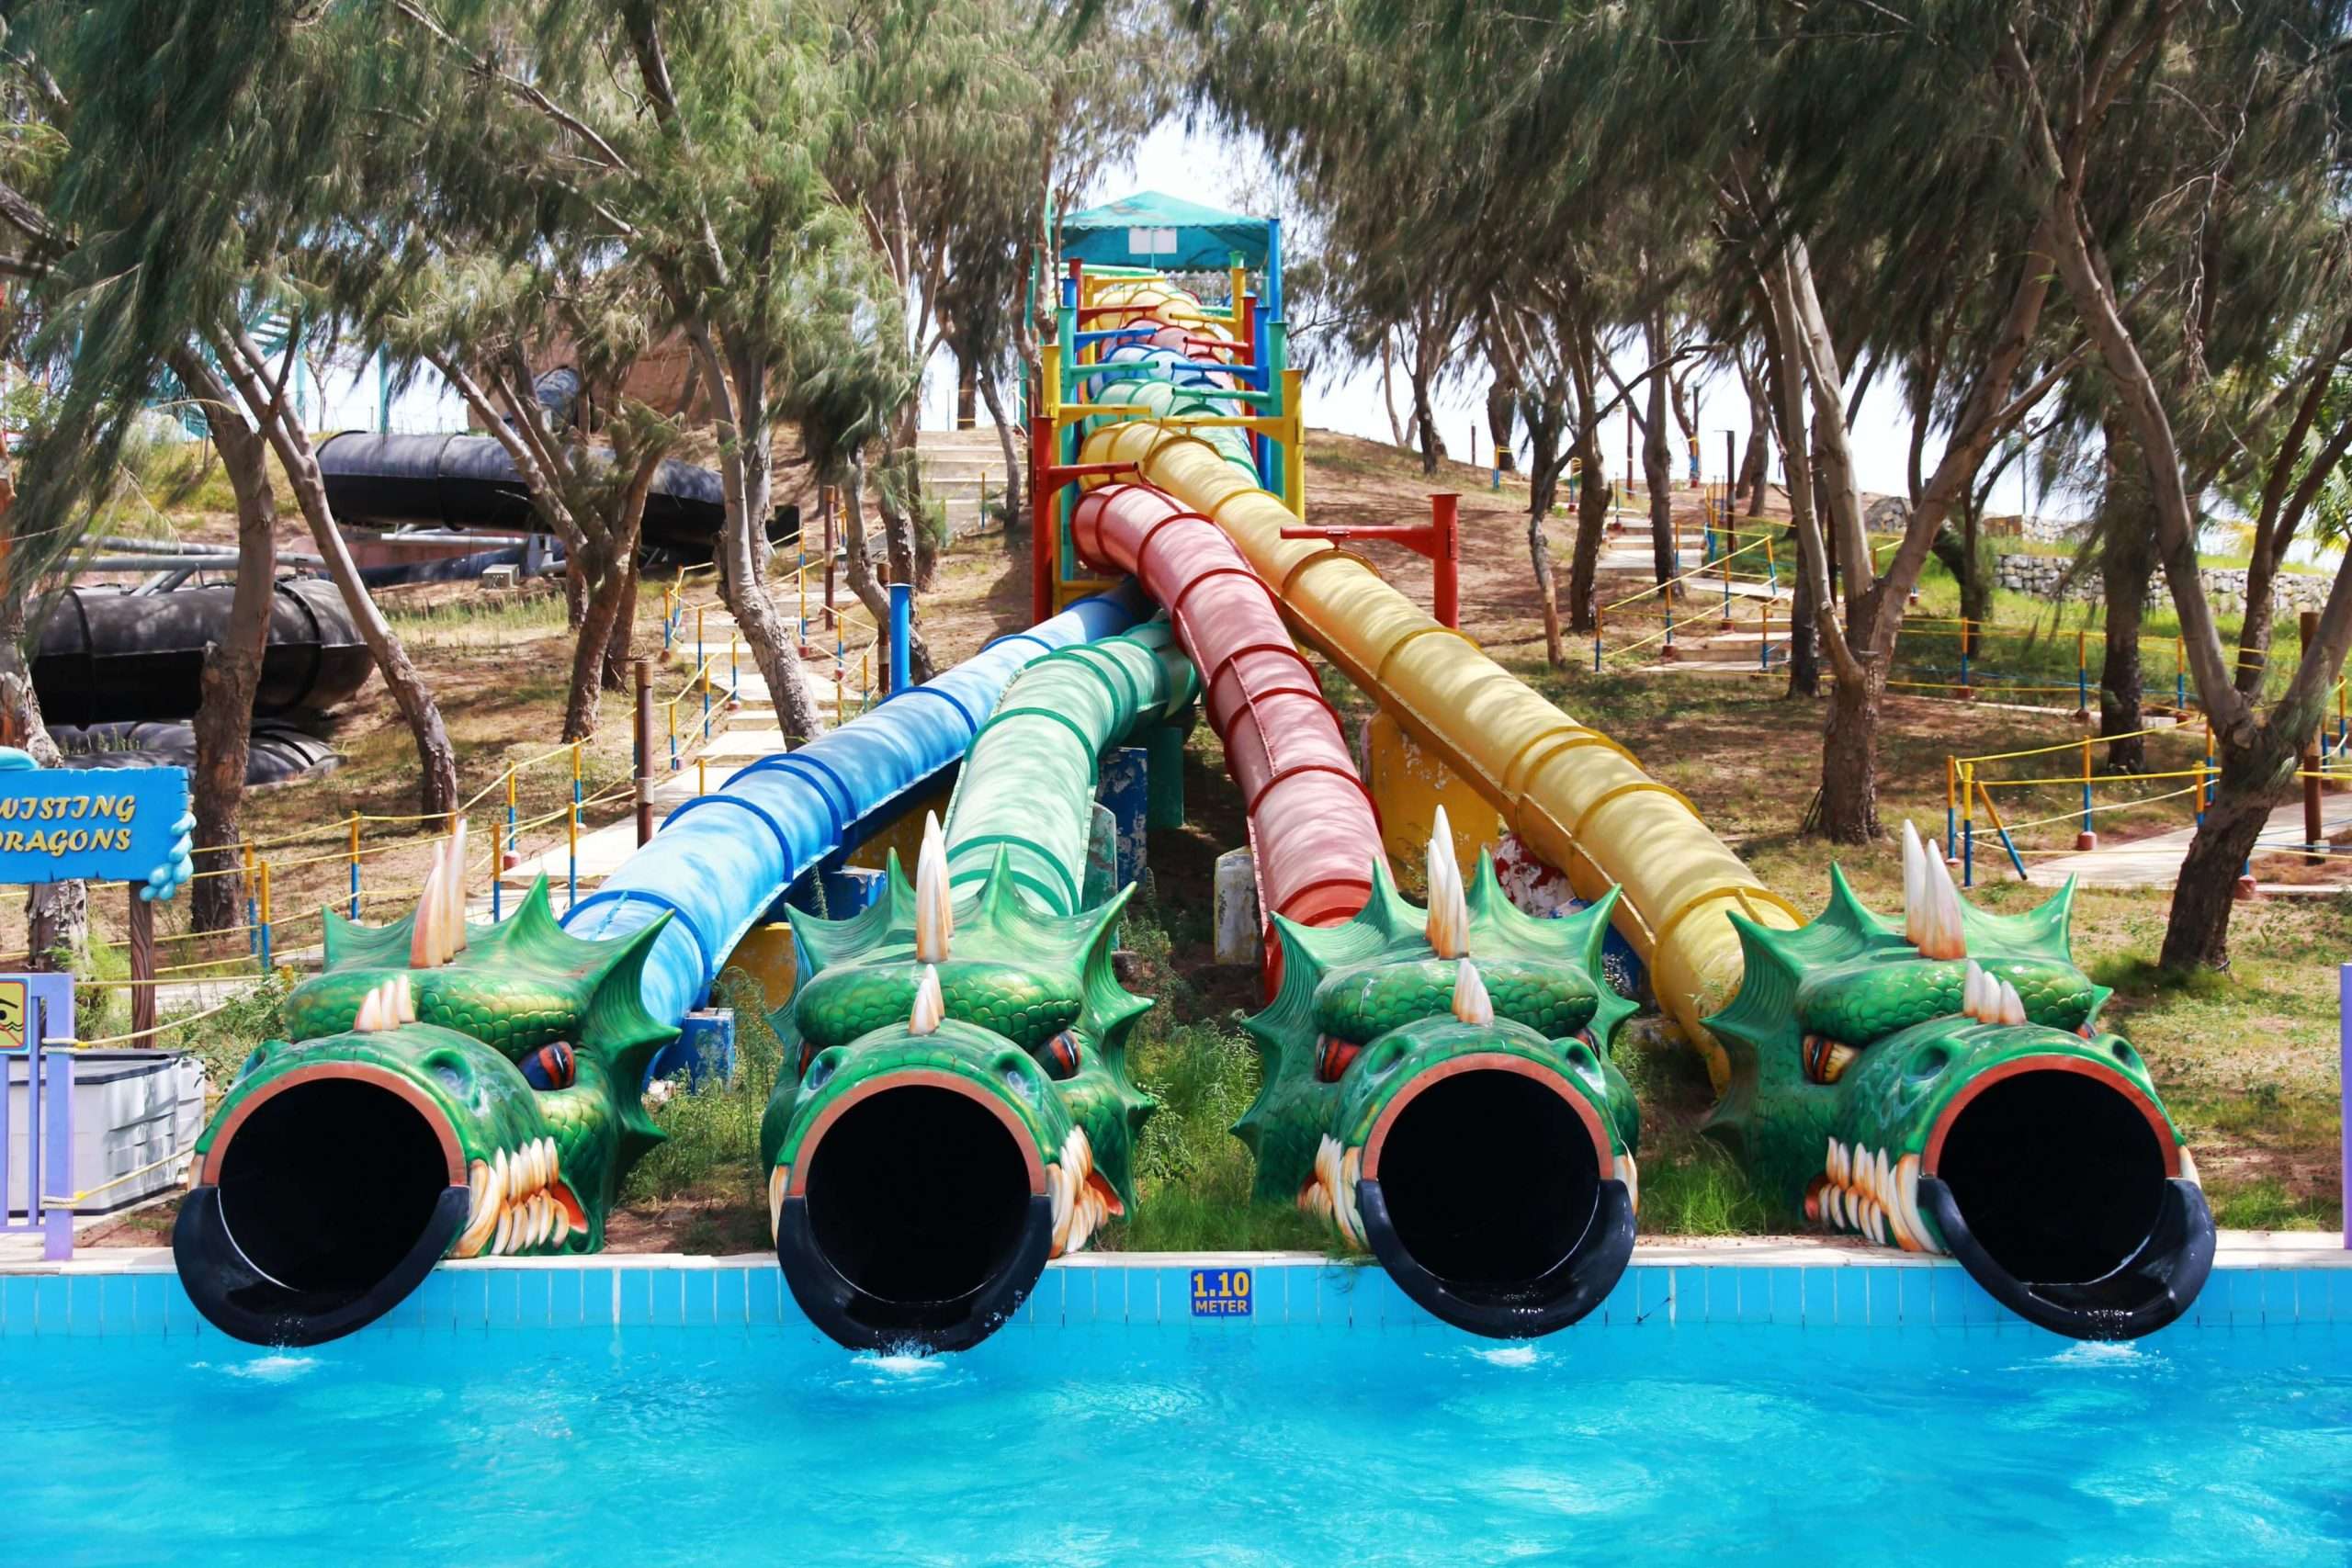 Twisting Dragons in Umm Al Quwain